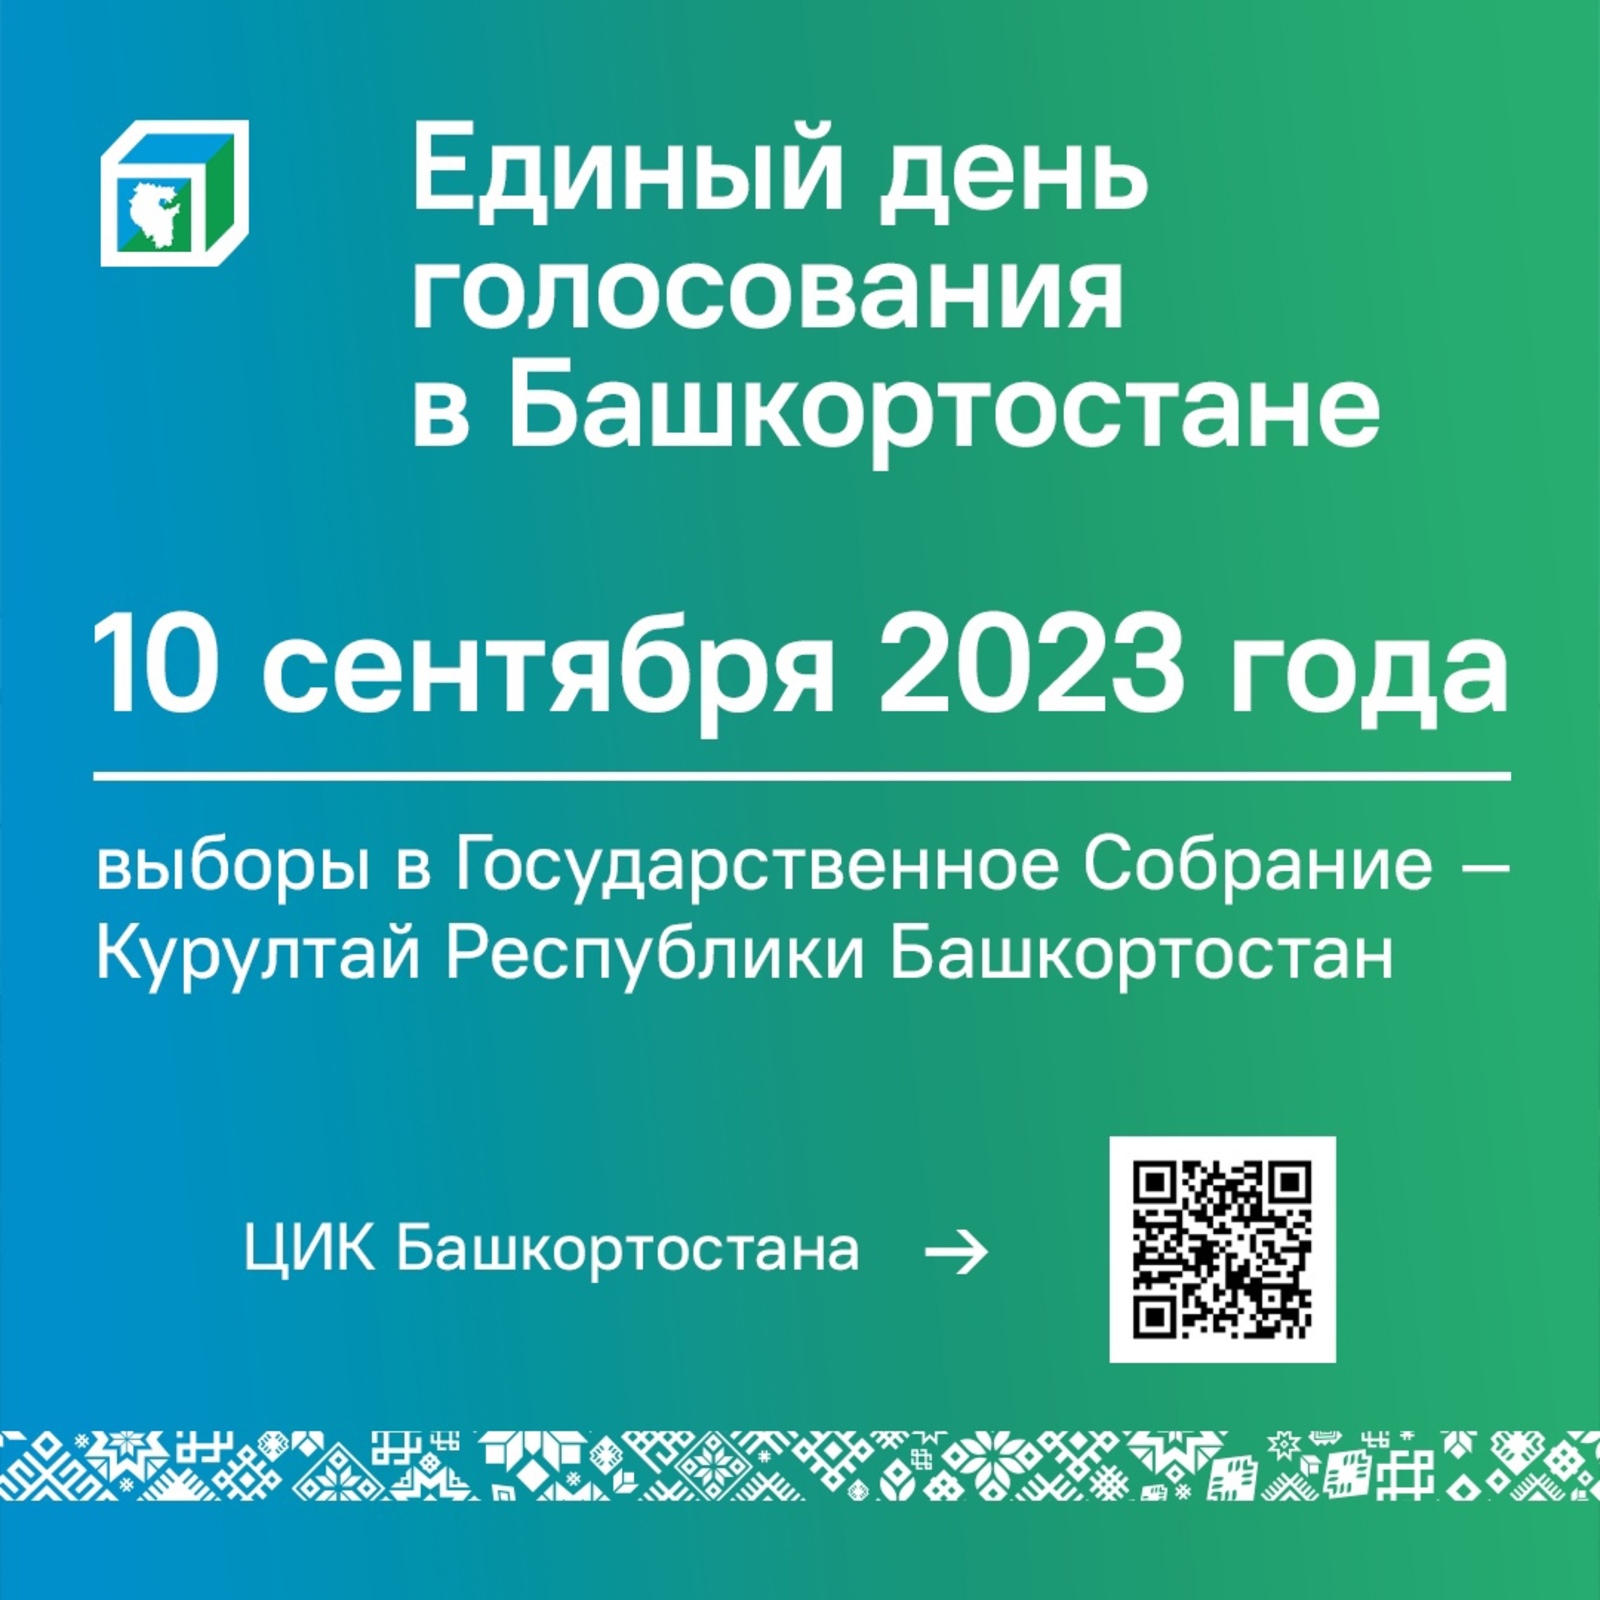 Сегодня, 10 сентября 2023 года, в Башкортостане проходит единый день голосования. Избирательные участки работают до 21:00.